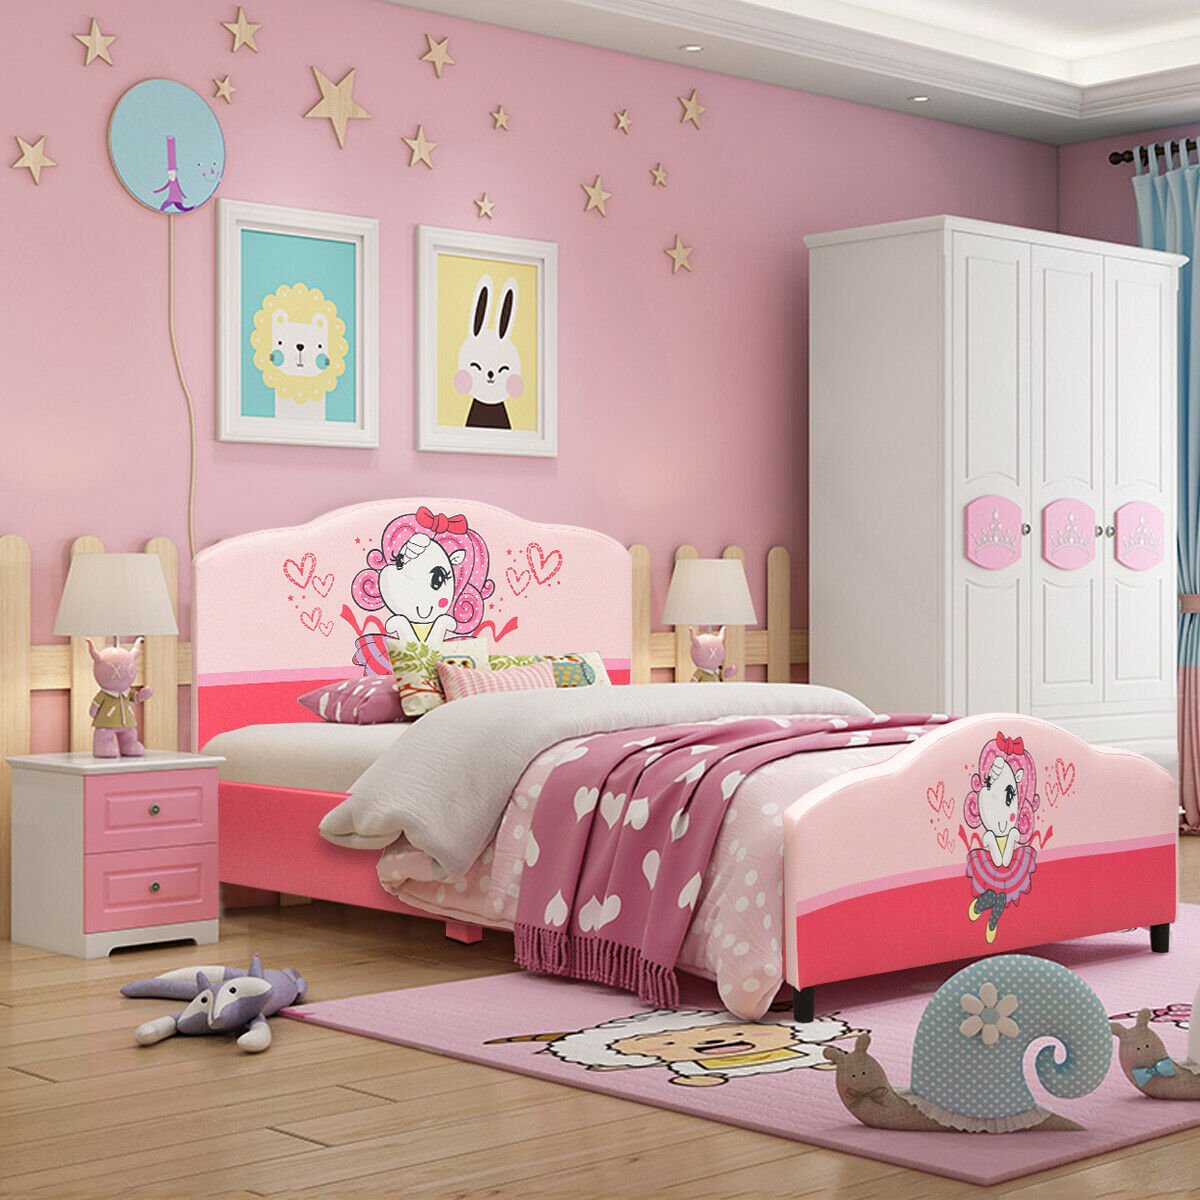 Kids Children Upholstered Platform Toddler Girl Pattern Bed, Pink